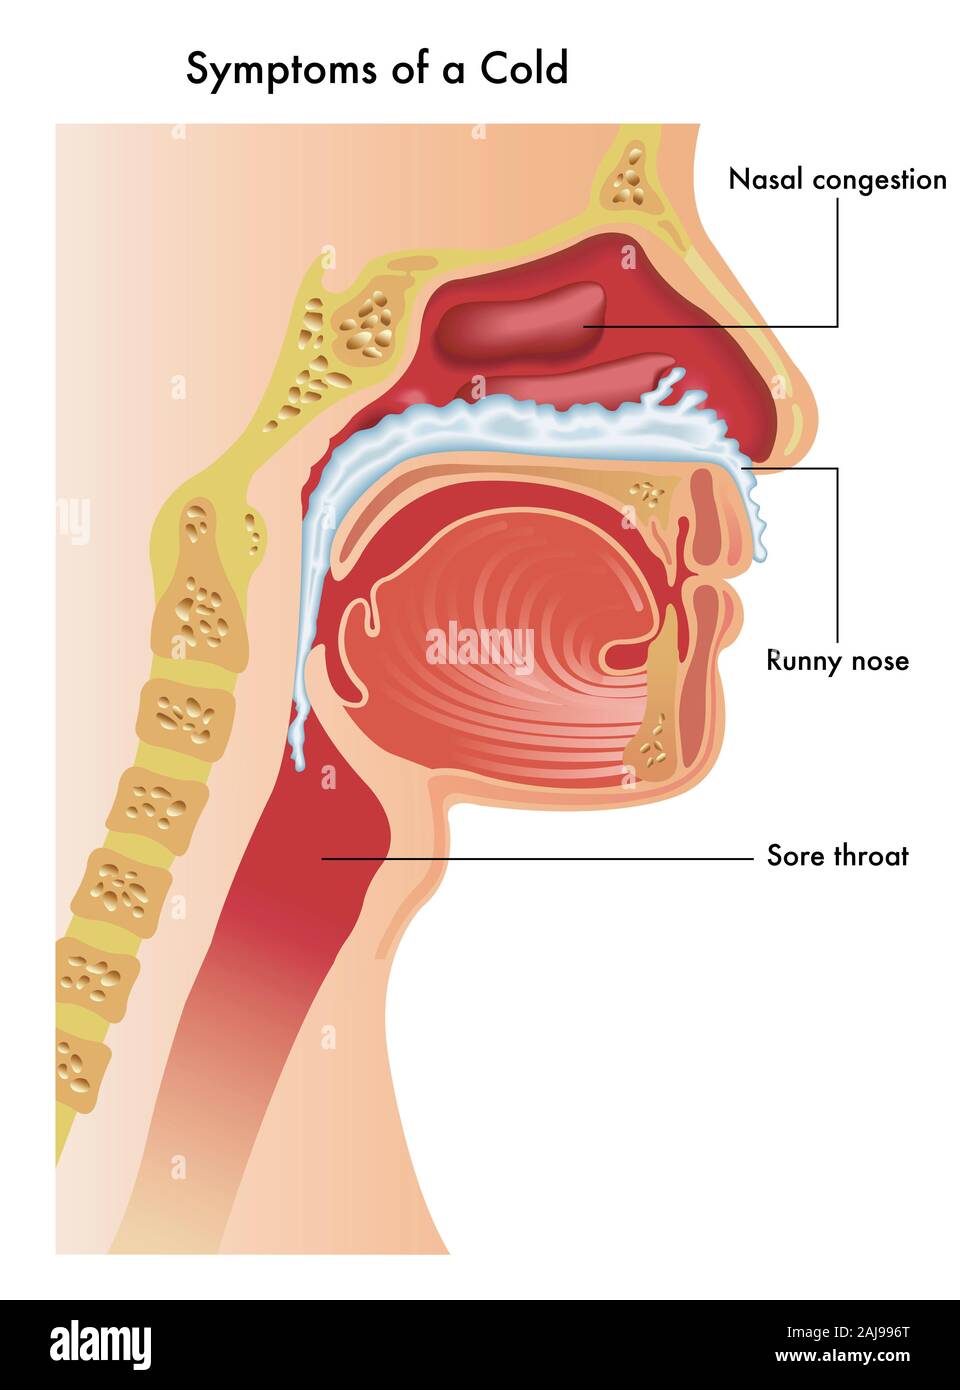 Una ilustración médica de la parte superior del tracto respiratorio de una persona con los síntomas de un resfriado común. Foto de stock